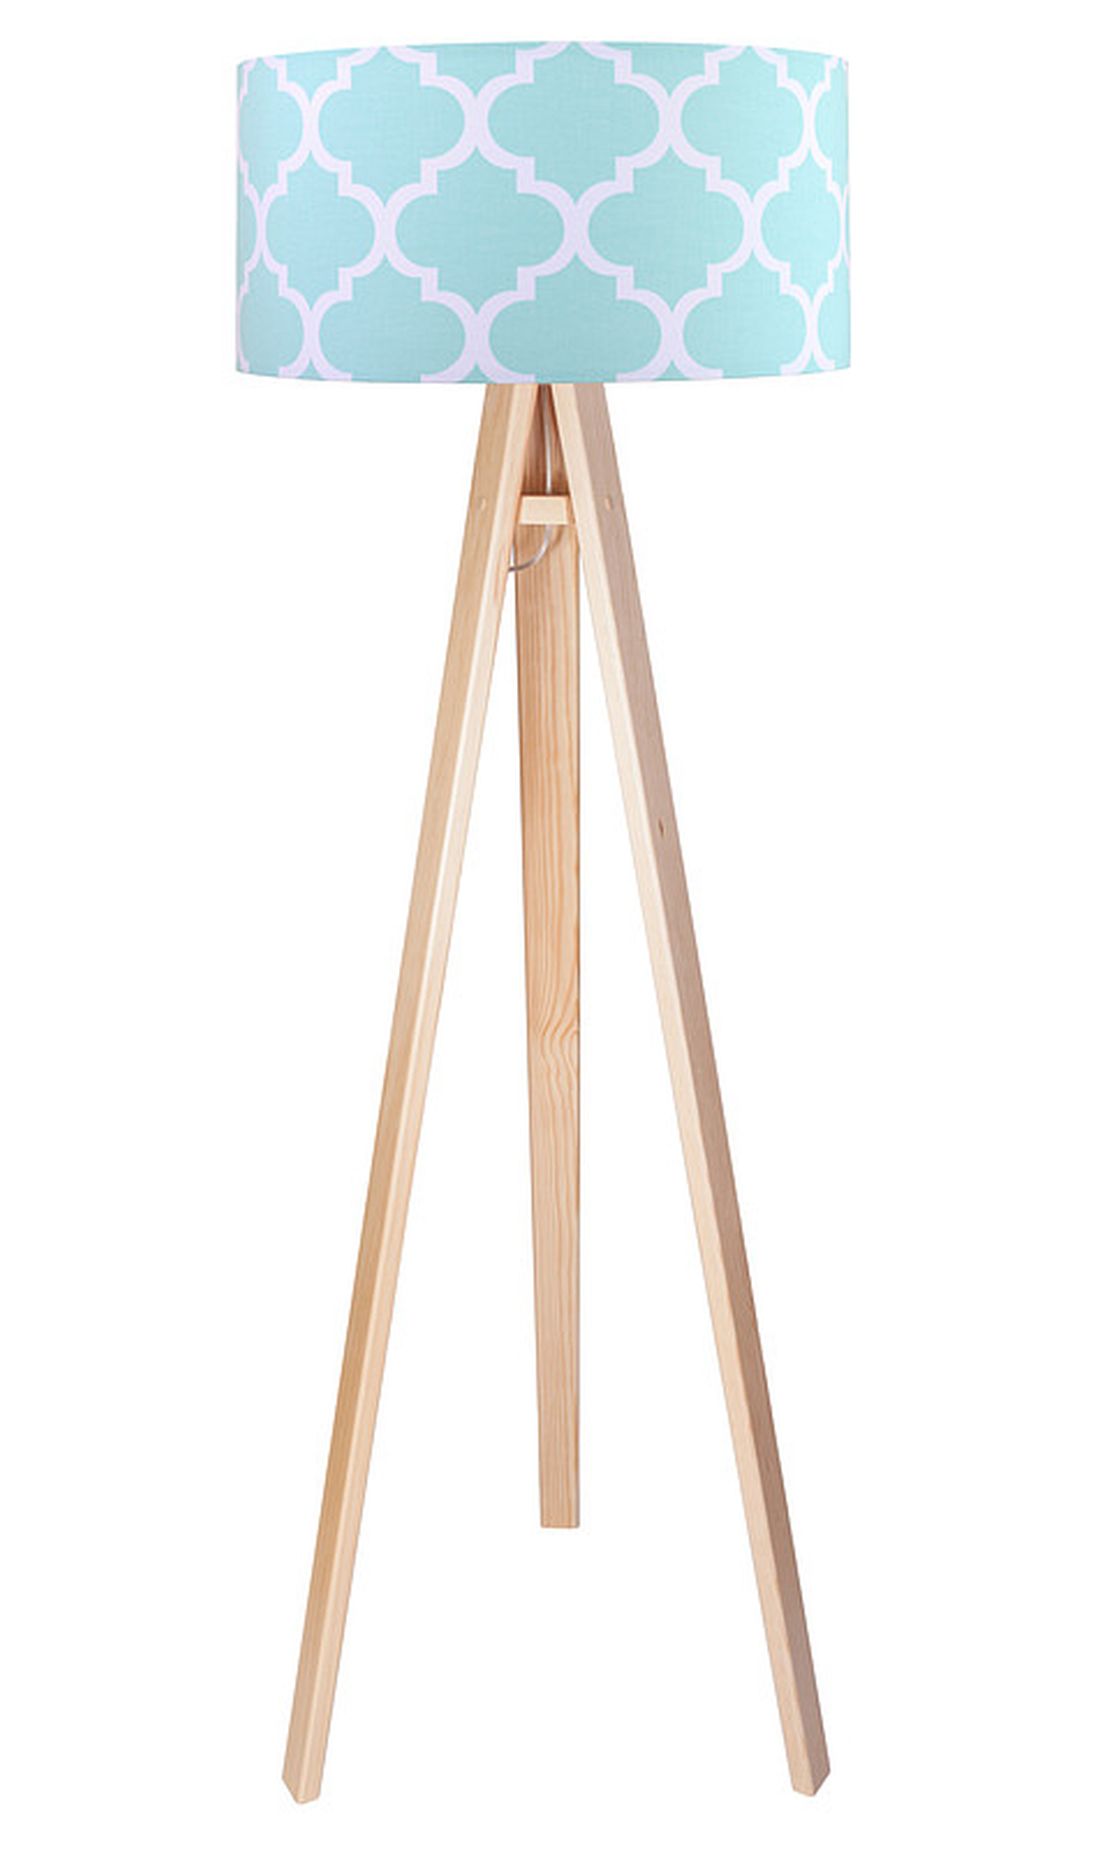 Stehlampe Farbig Braun Blau Stoff Dreibein 140cm Retro